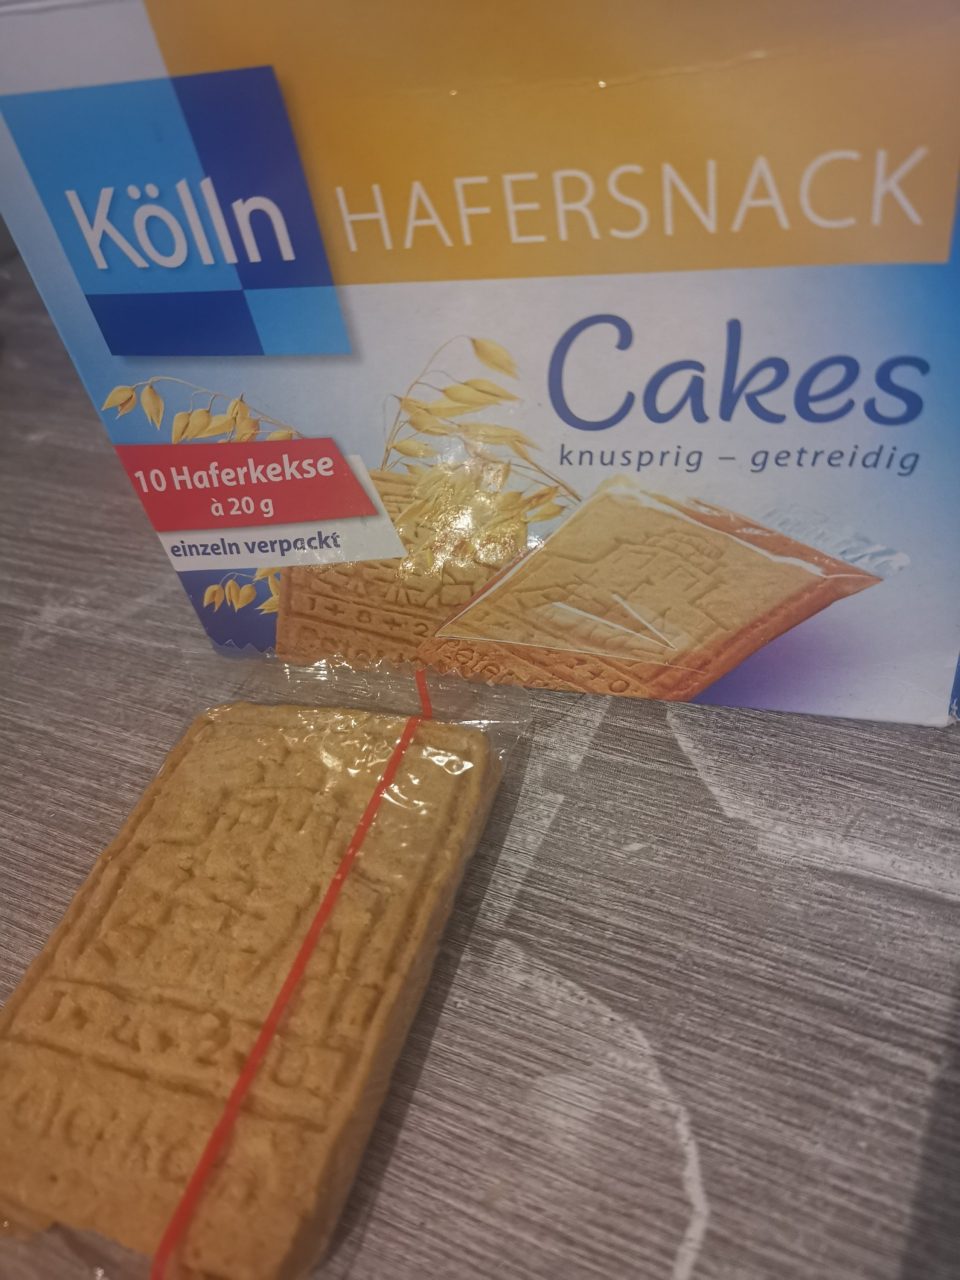 Kölln Hafersnack Cakes Franken Bloggertreffen Teil 6 1